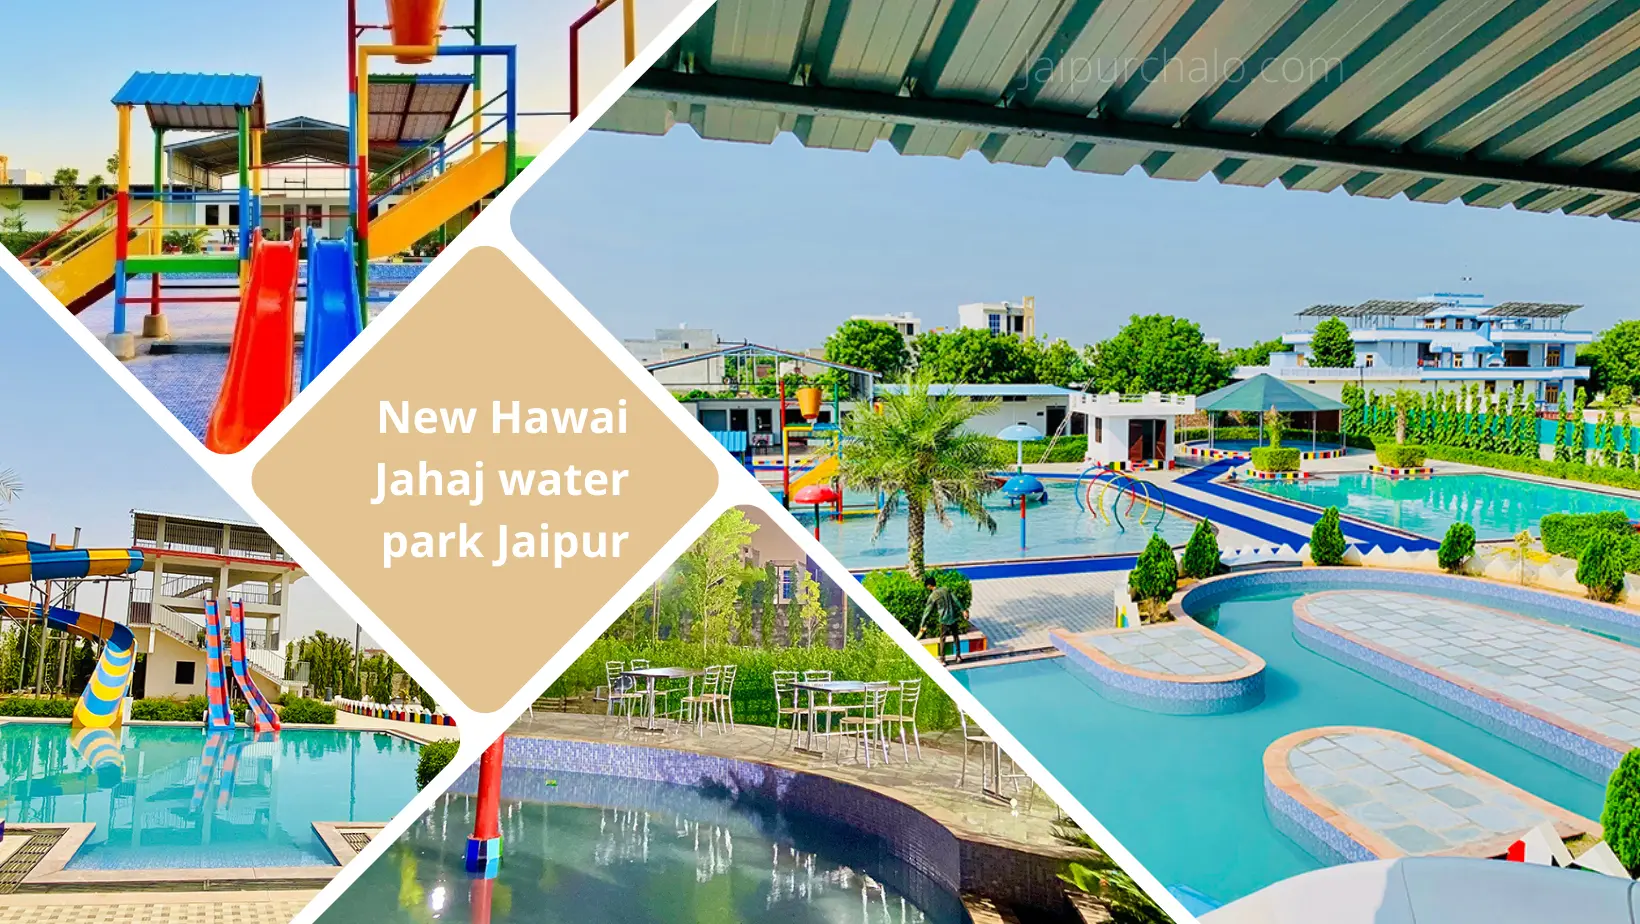 New Hawai Jahaj water park Jaipur